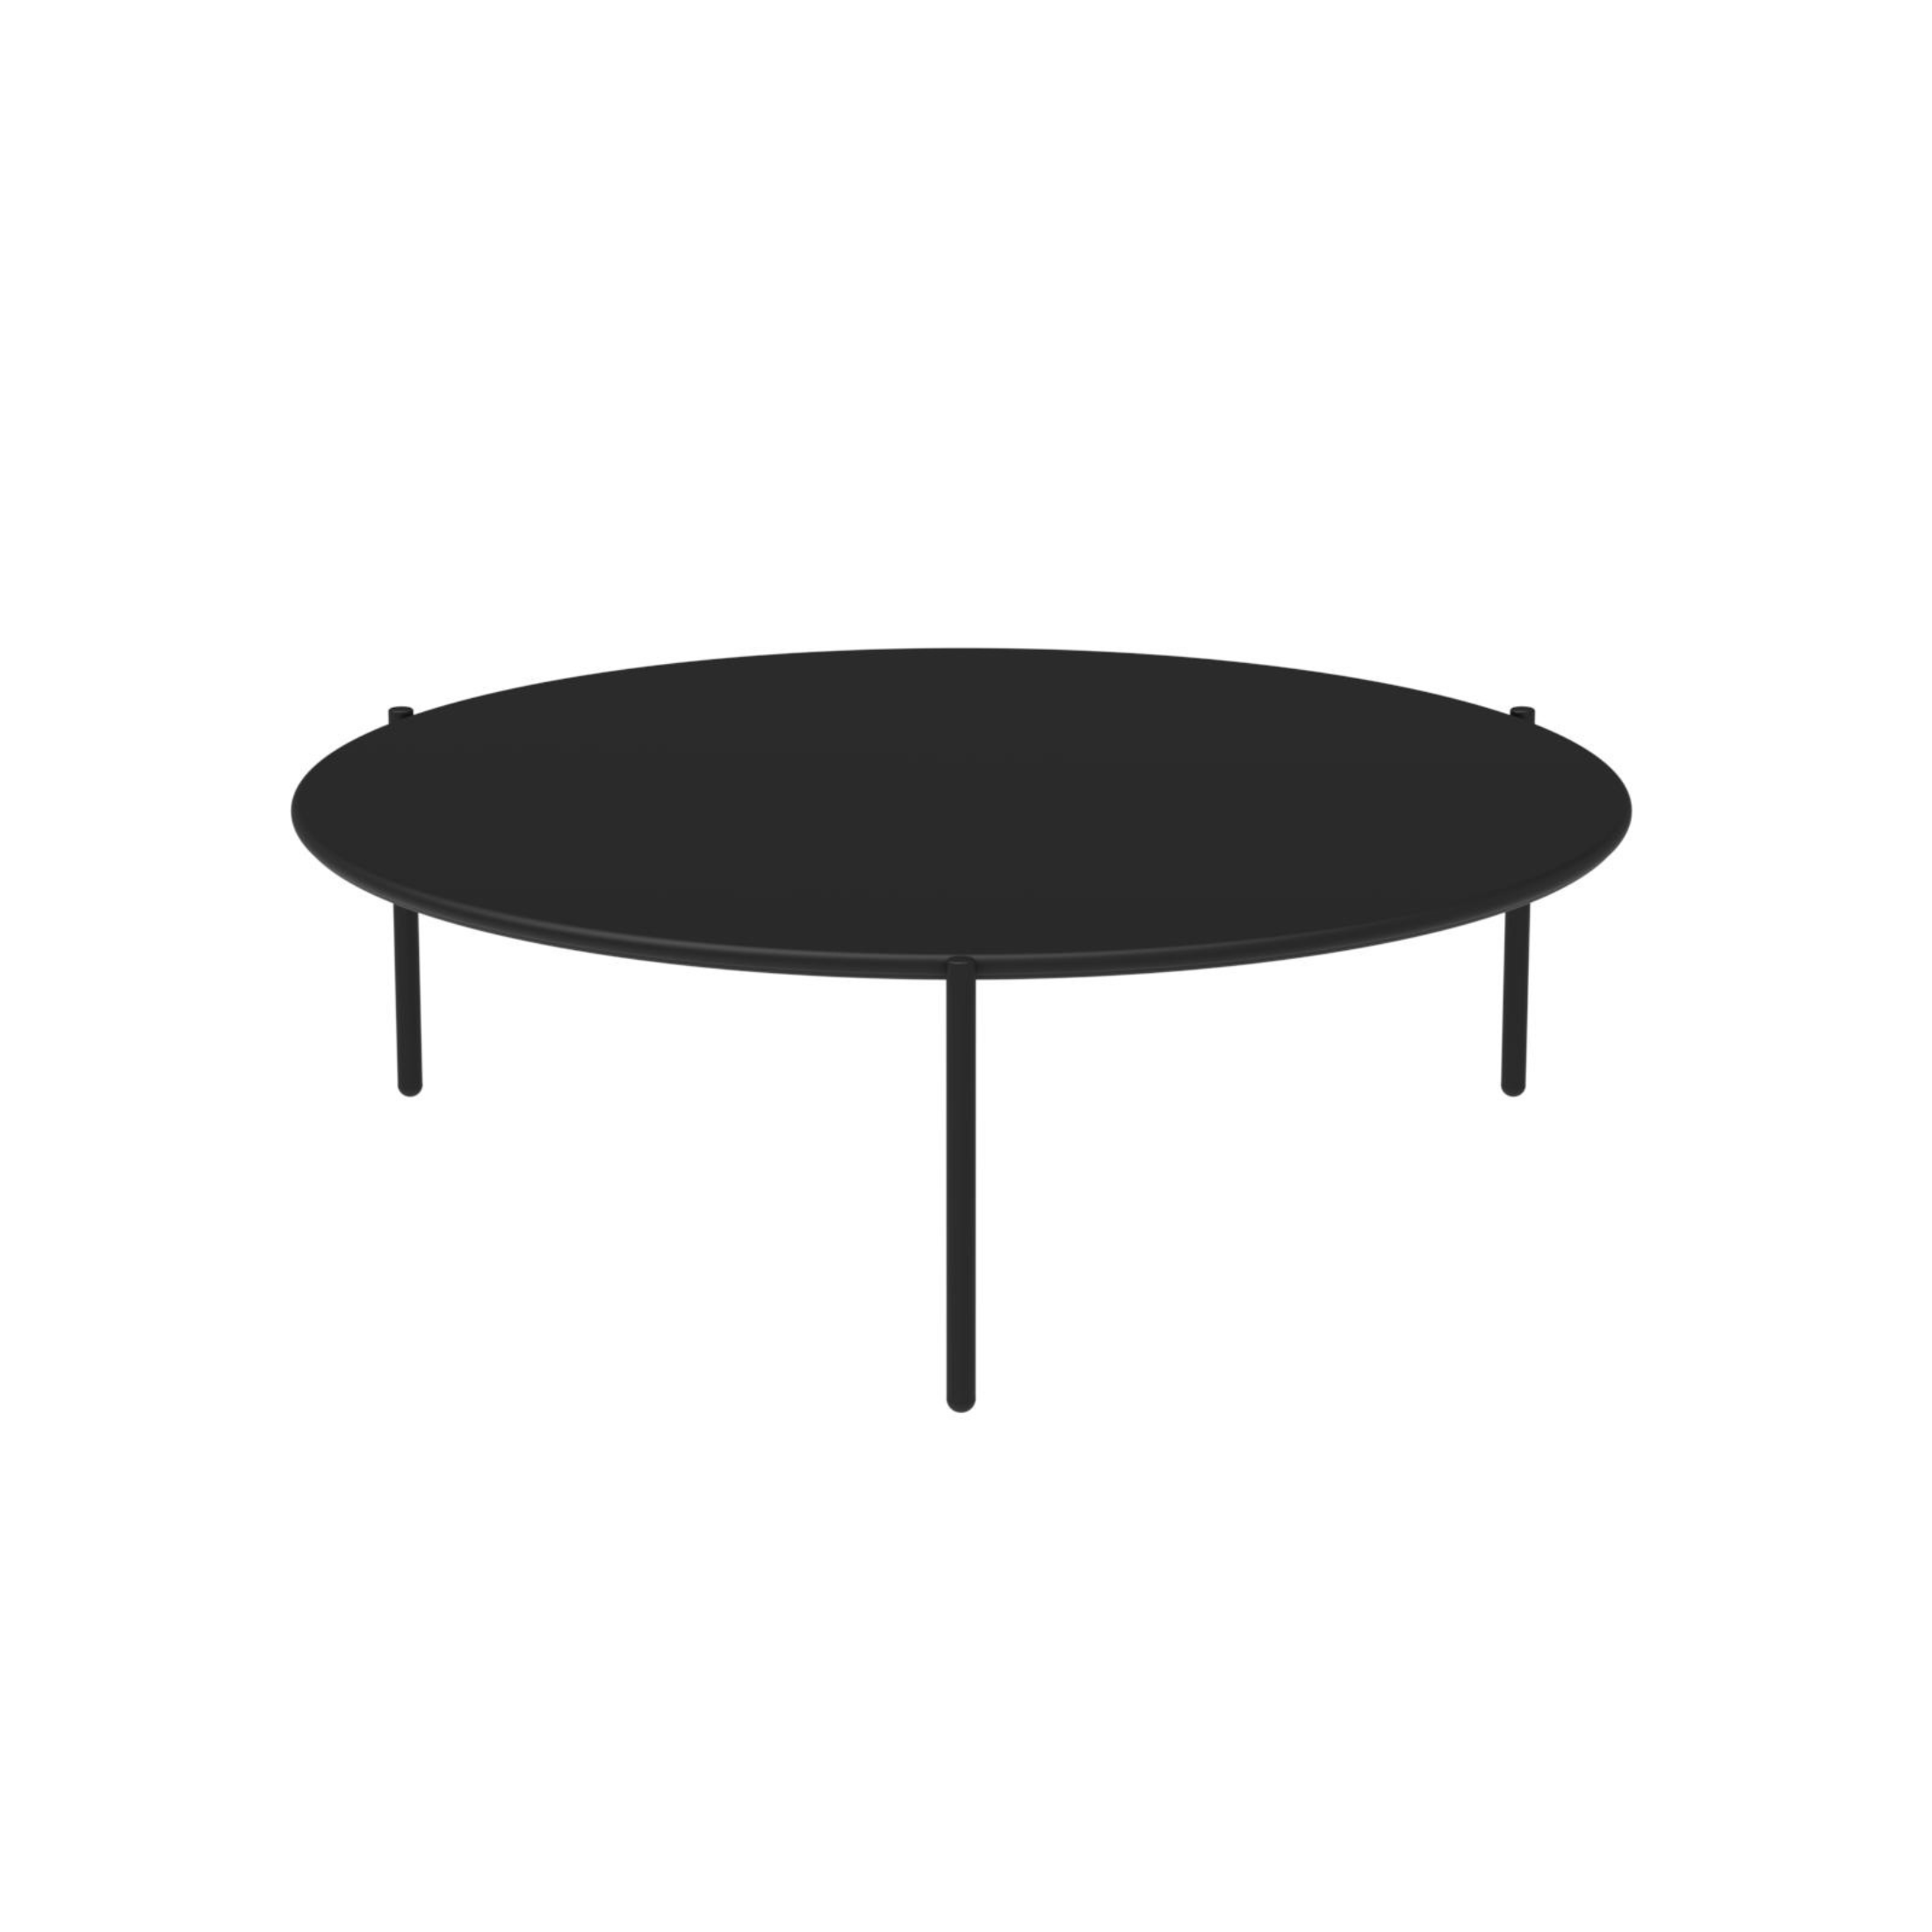 Mesita baja redonda de metal "Aria3" mesa de jardín apilable 110x110 cm 35h